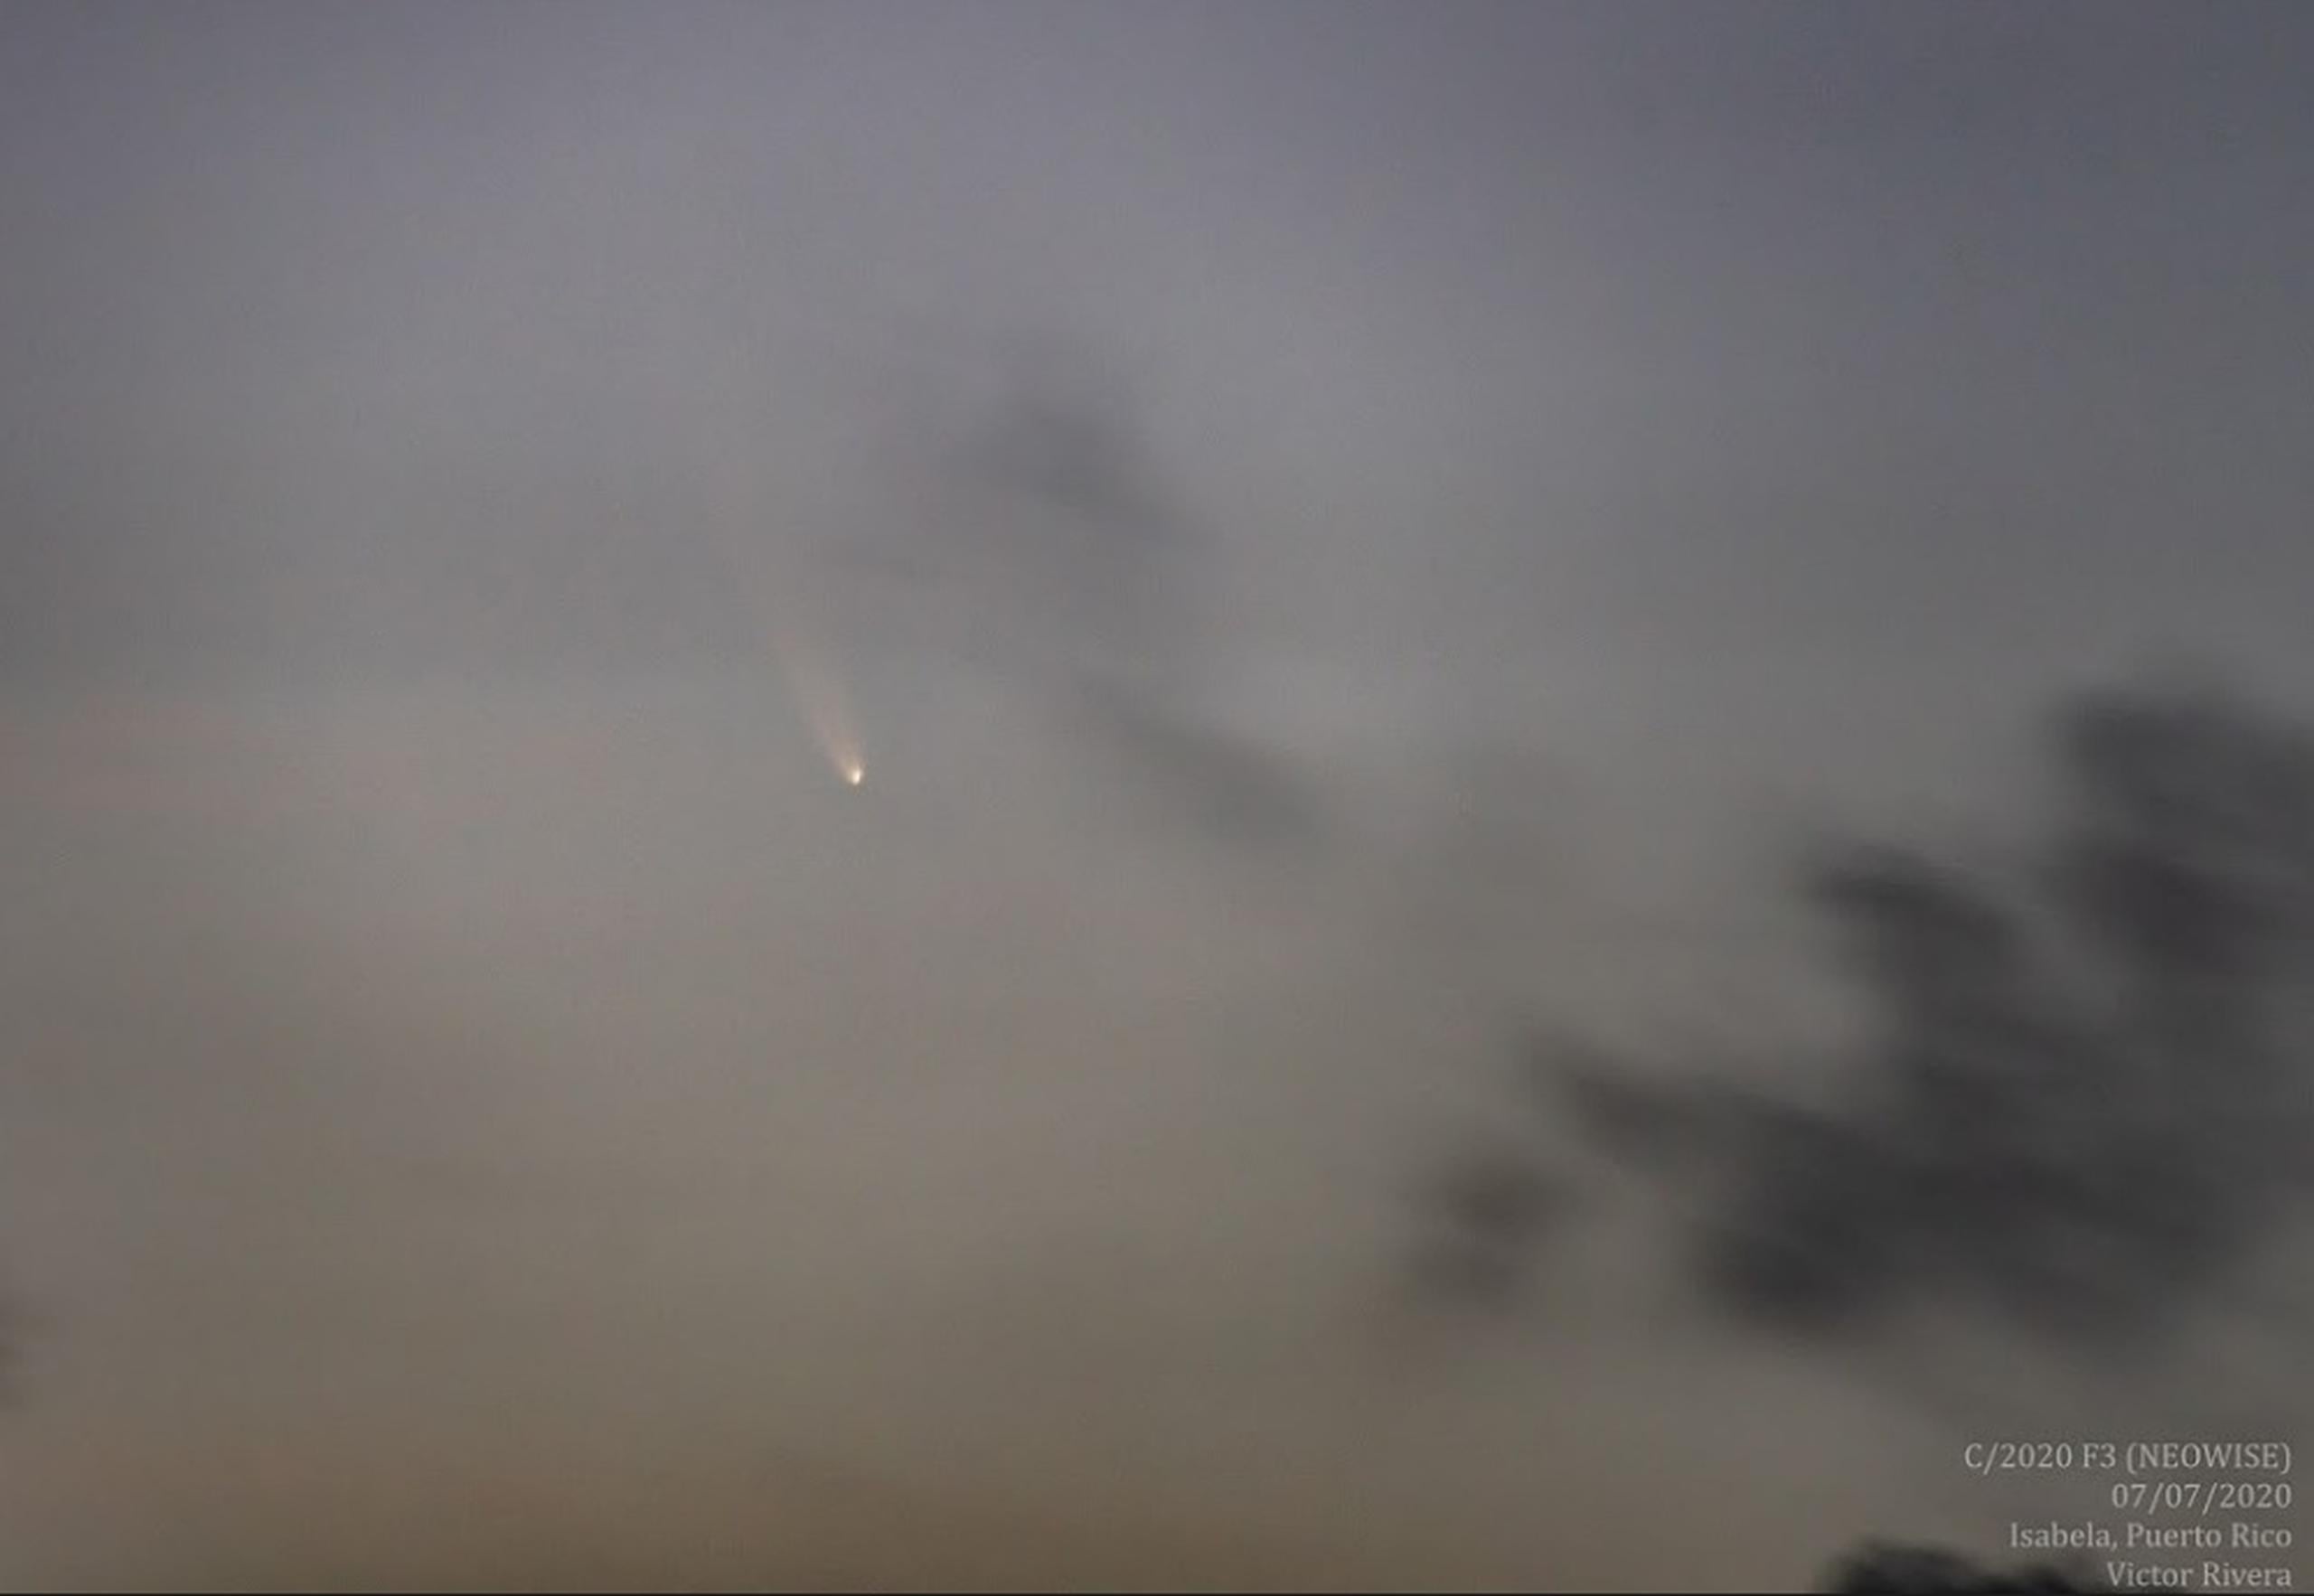 Víctor Rivera, uno de los astrofotografos de la SAC, captó imágenes del cometa durante el amanecer del martes y explicó que aunque puede ser levemente apreciado a simple vista, se localiza y observa mucho mejor a través de binoculares.